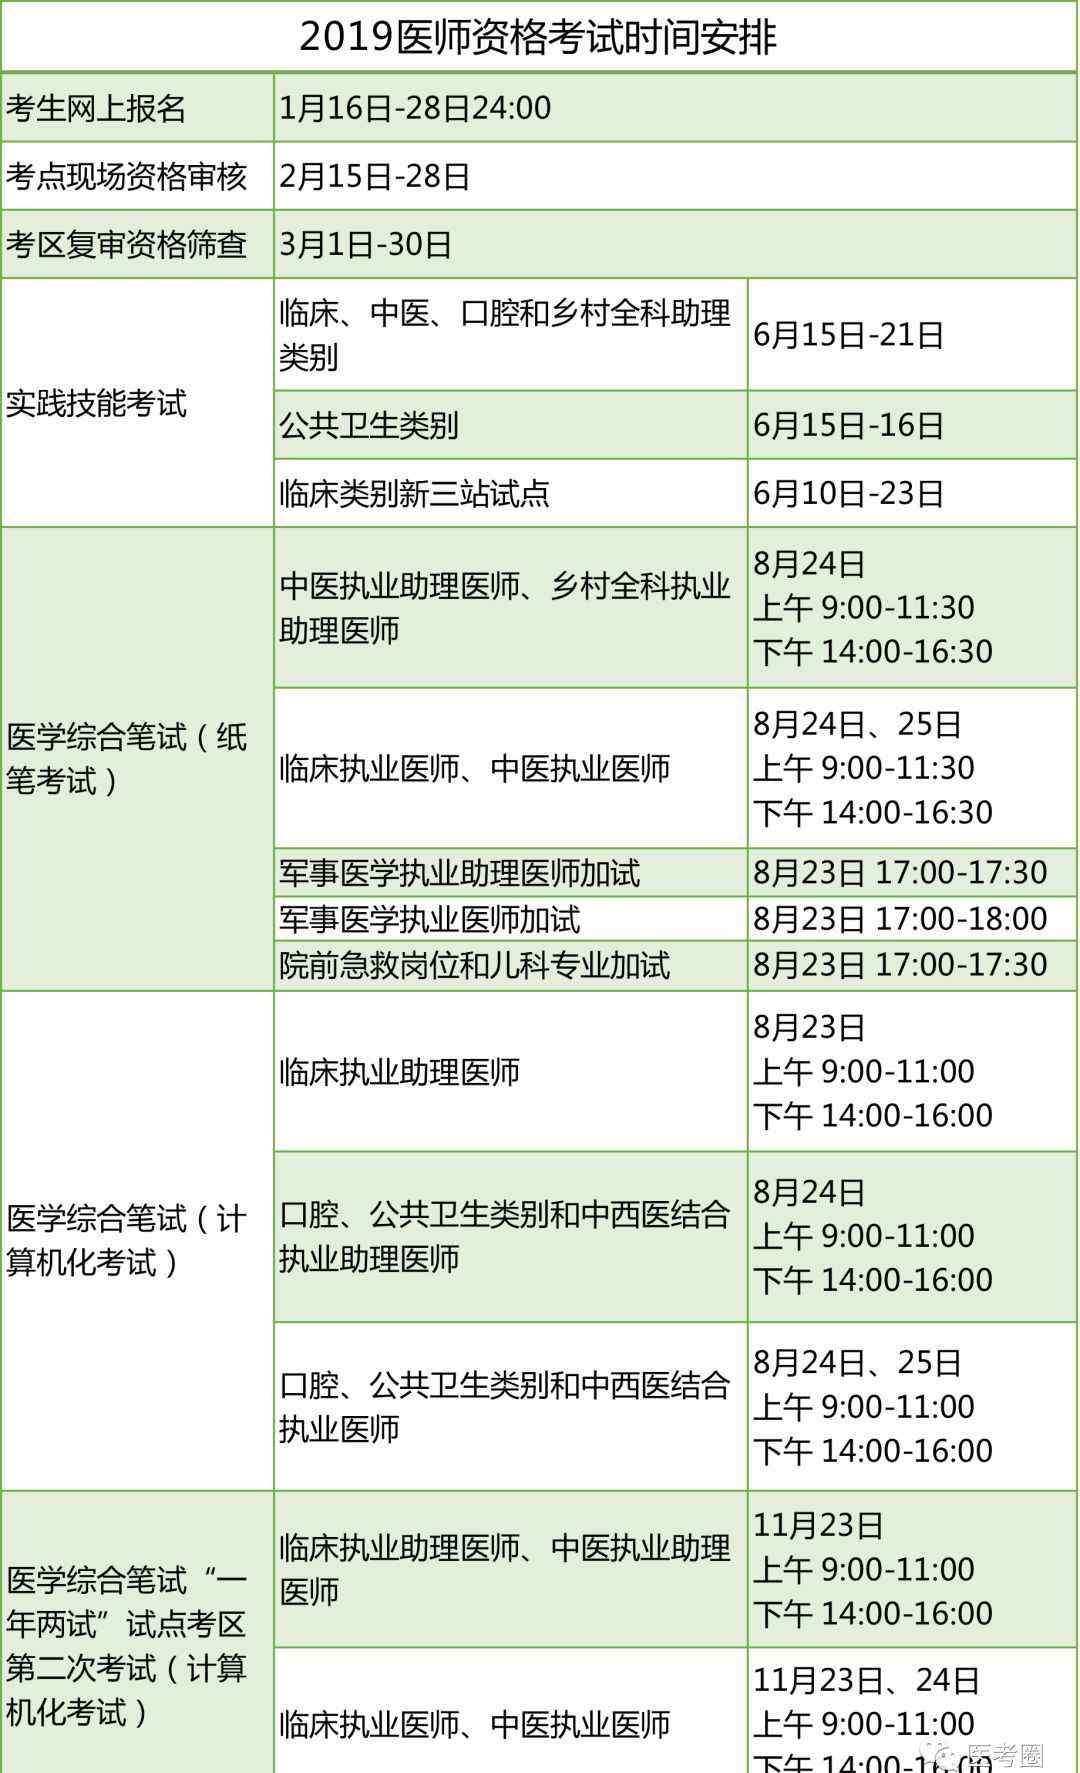 河南医学考试网 河南考区纳入2019年医师资格考试医学综合笔试“一年两试”试点